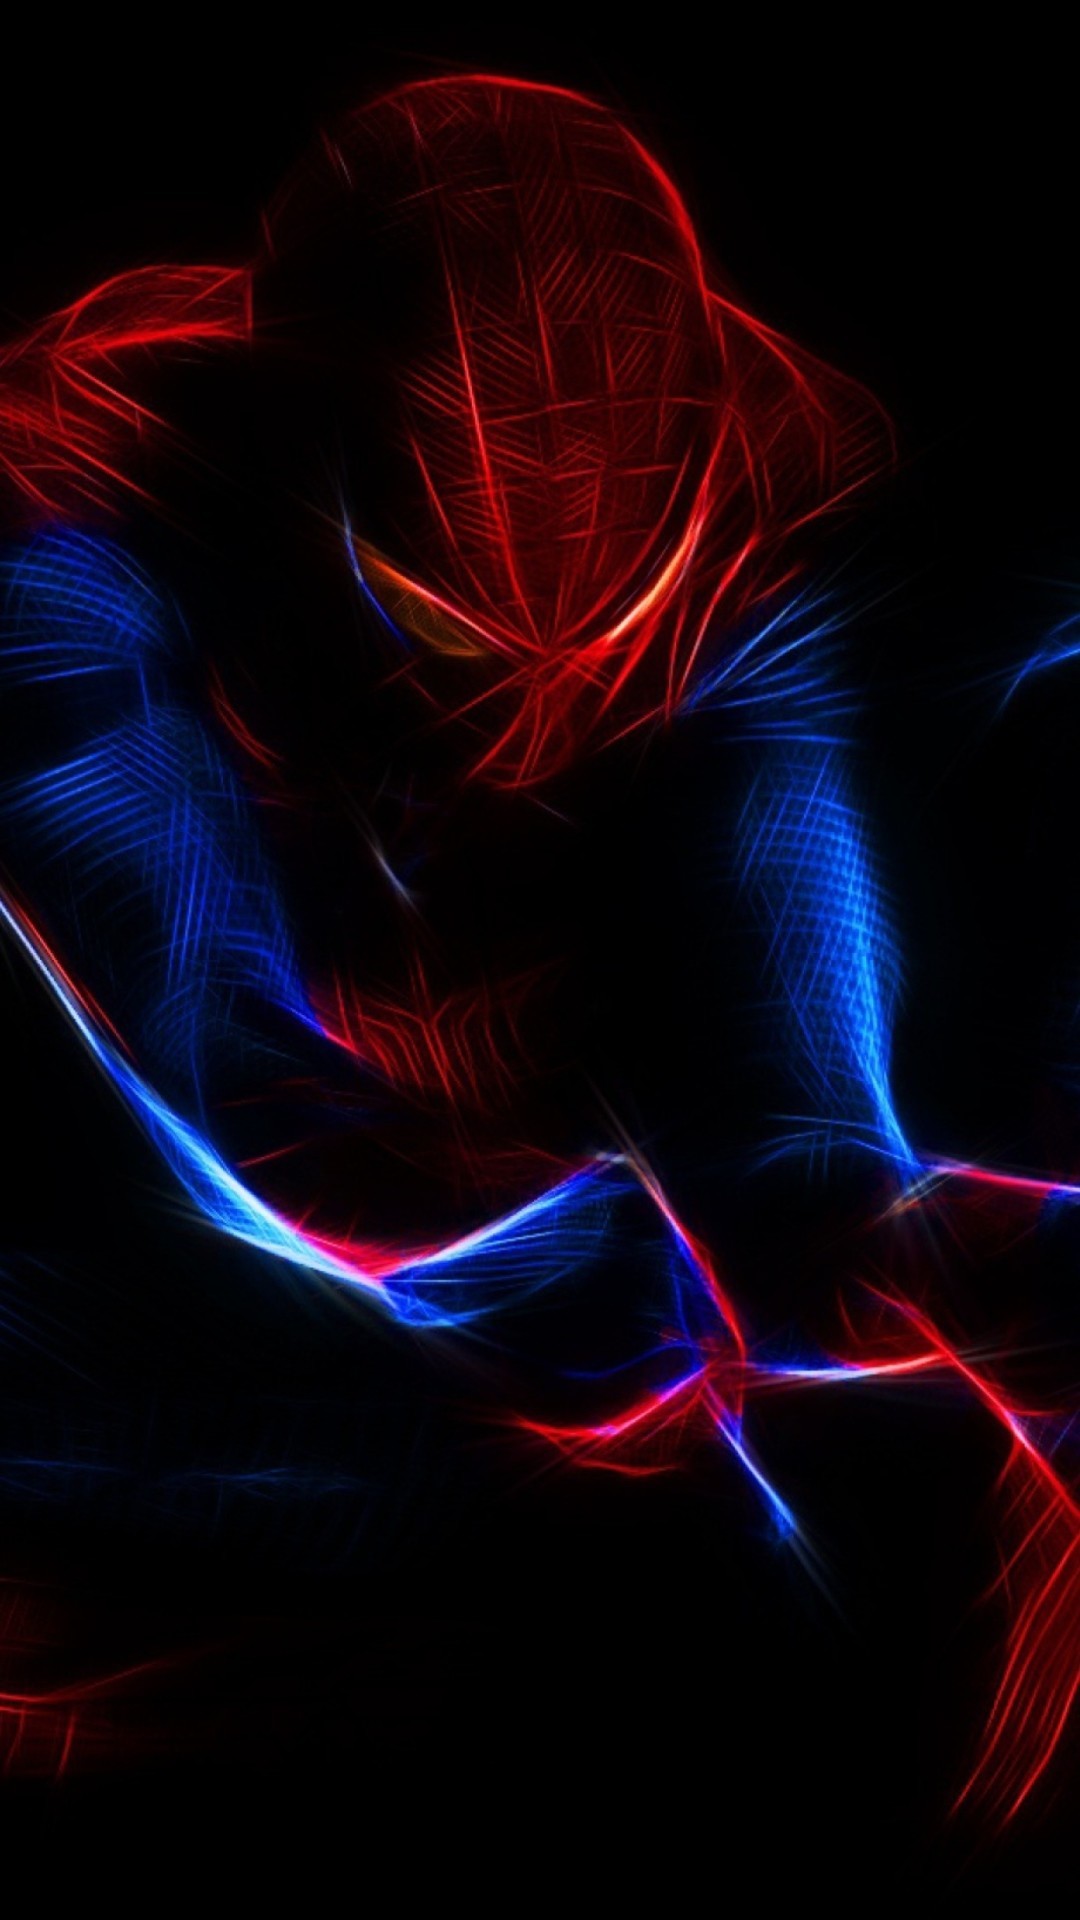 스파이더 맨 배경 아이폰,빨간,푸른,강청색,빛,그래픽 디자인